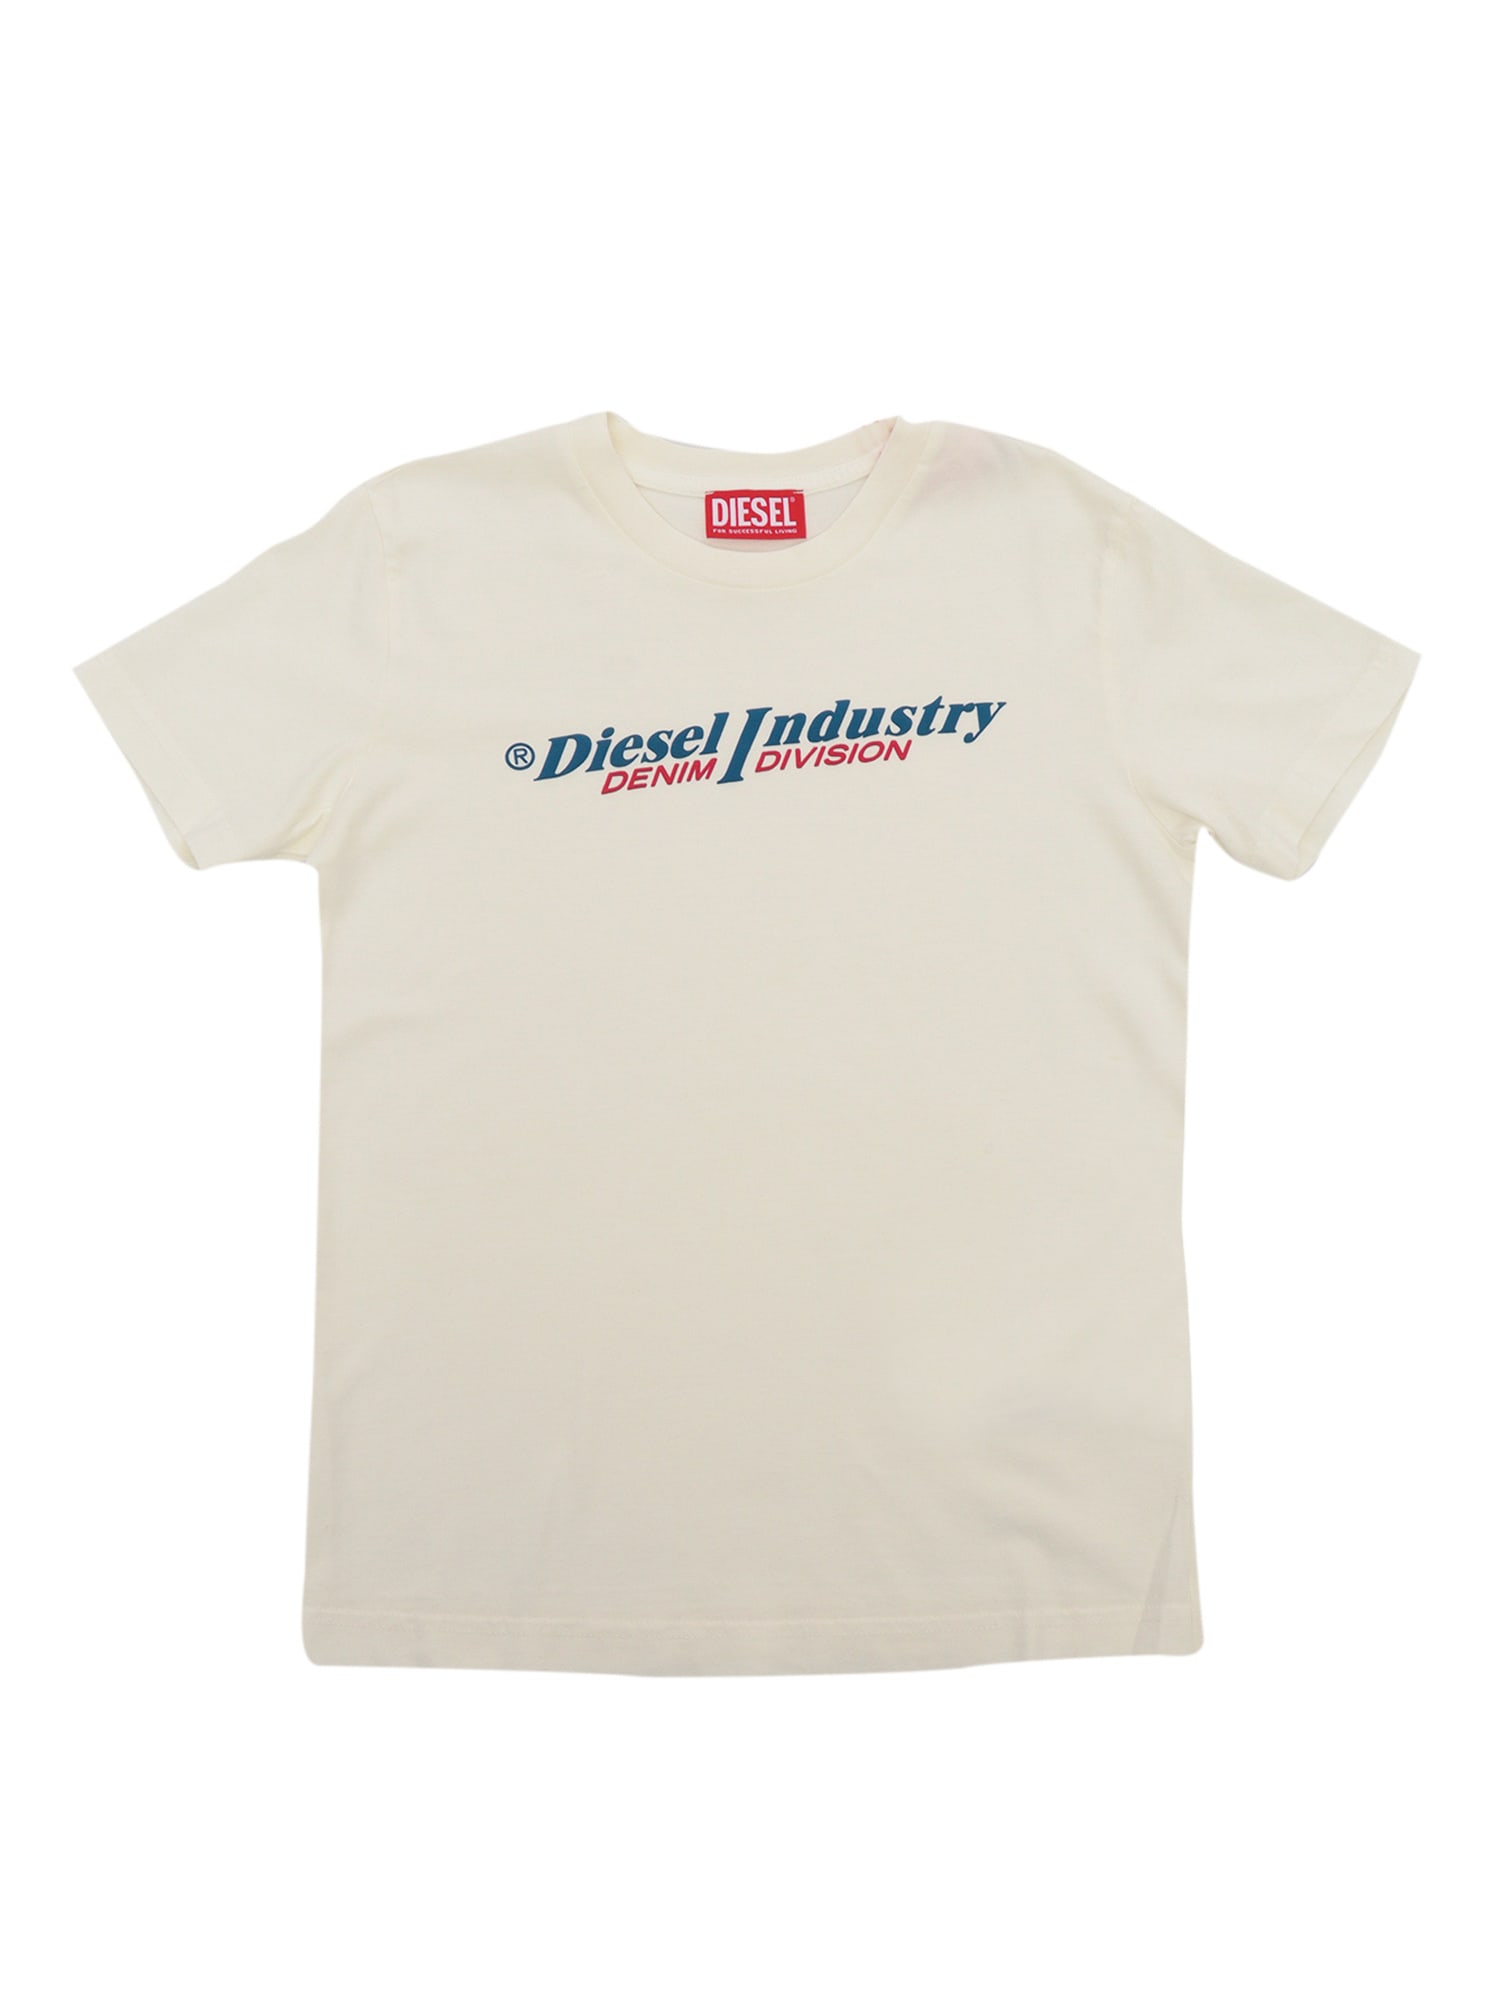 Diesel Kids' Tdiegoind T-shirt In Grey